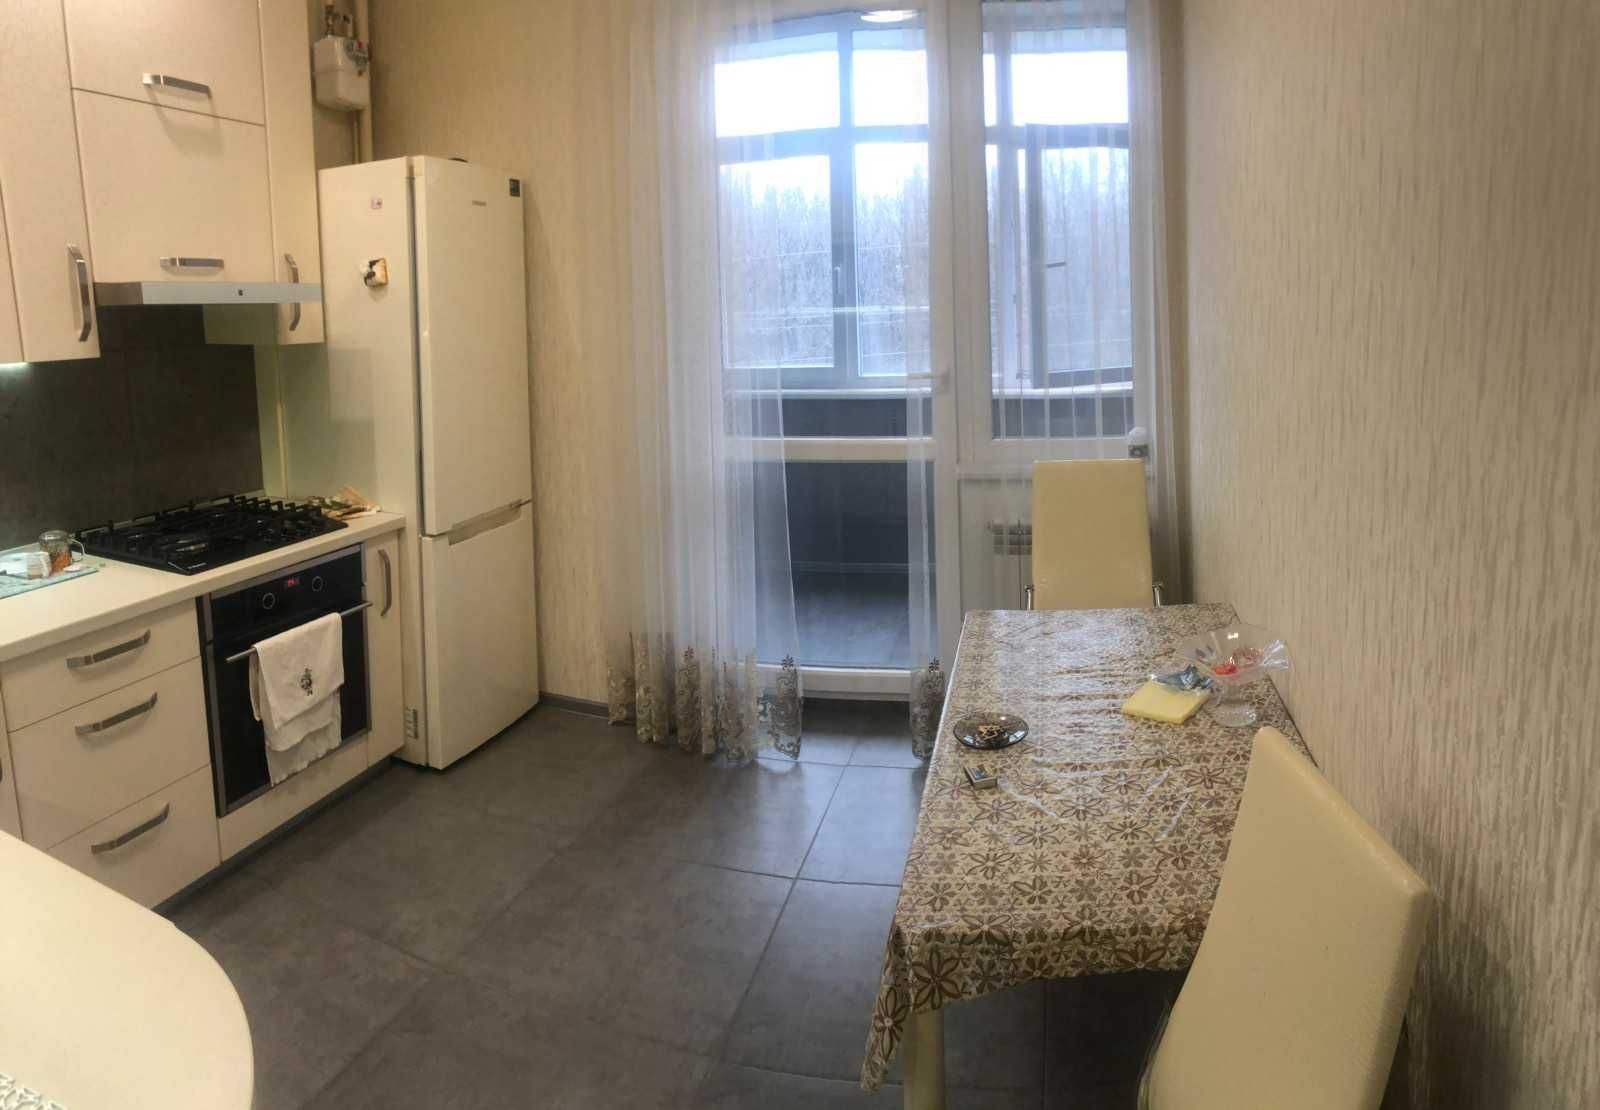 Продам 1-о комнатную квартиру на Алексеевке с новым ремонтом.